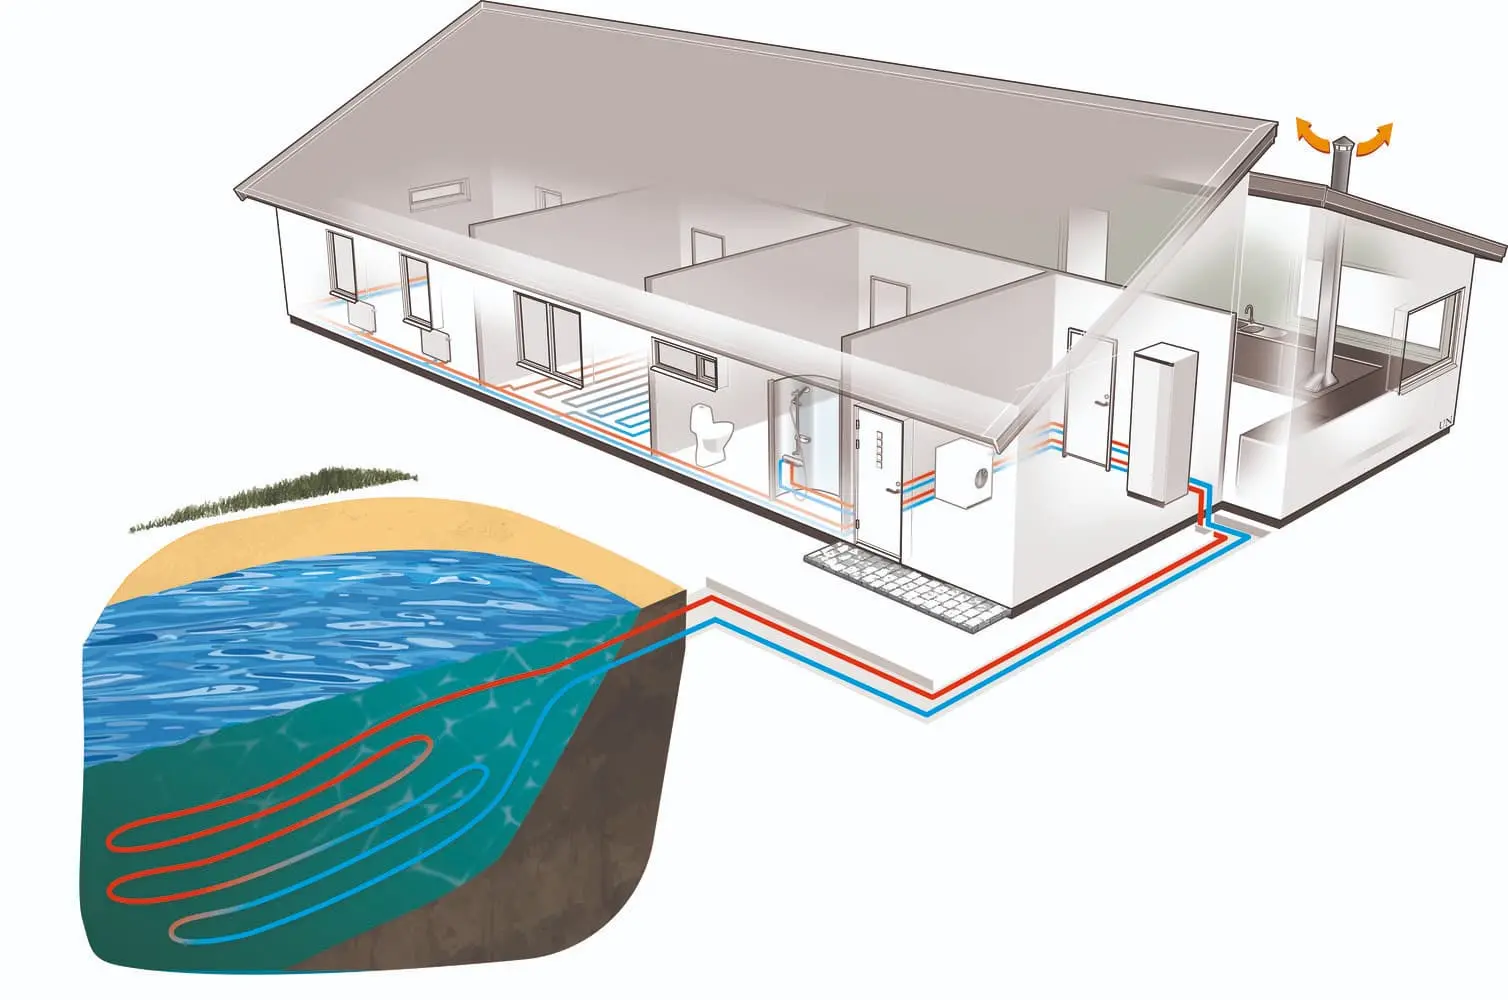 Kako radi toplinska pumpa zemlja/voda pod vodom